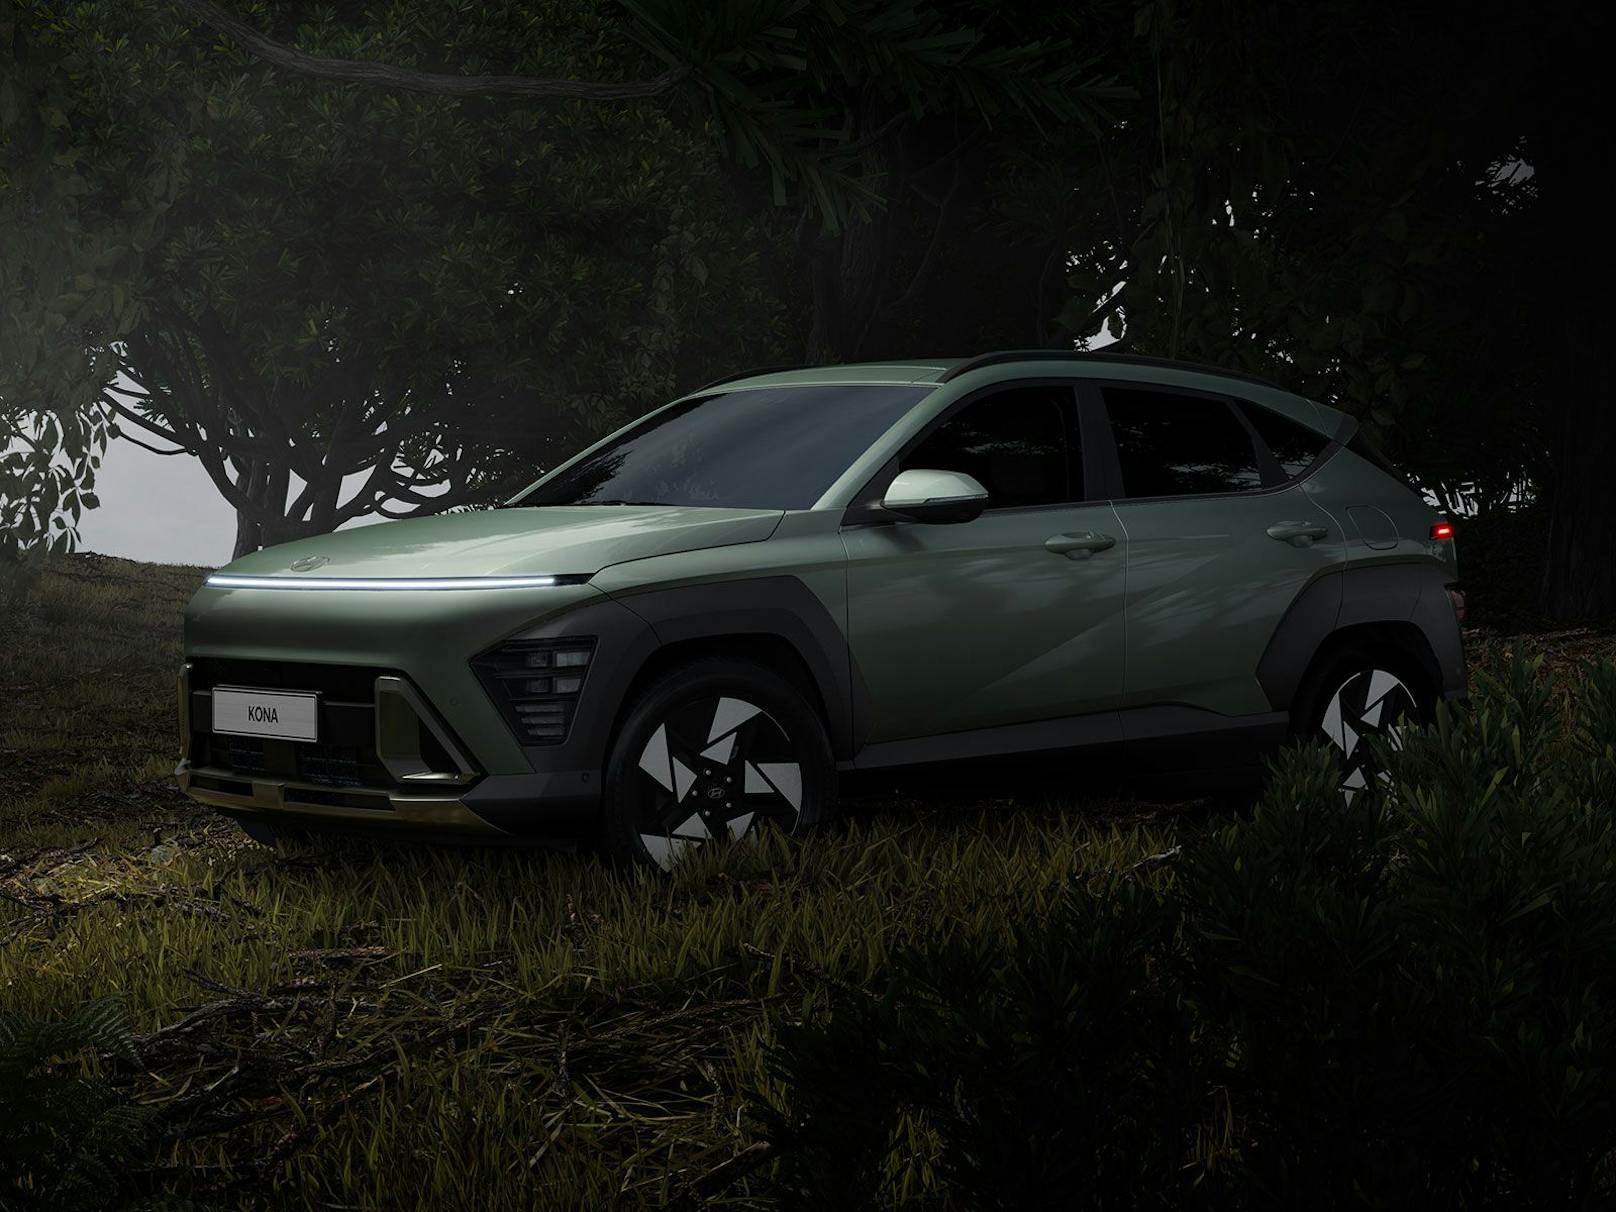 Der neue Hyundai Kona wirkt sehr futuristisch und modern